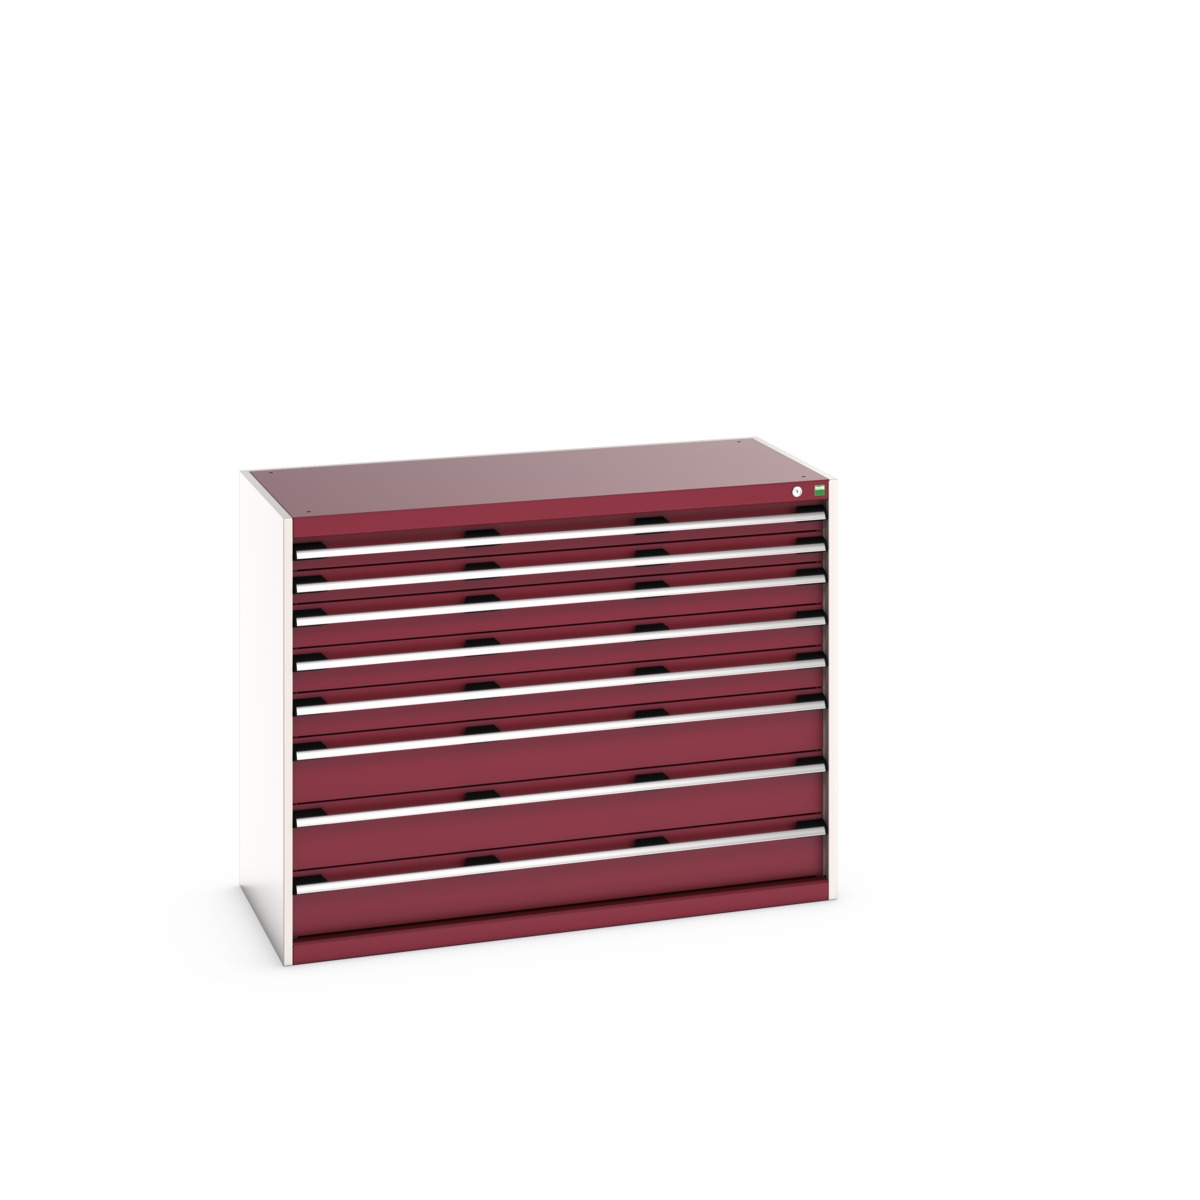 40022154.24V - cubio drawer cabinet